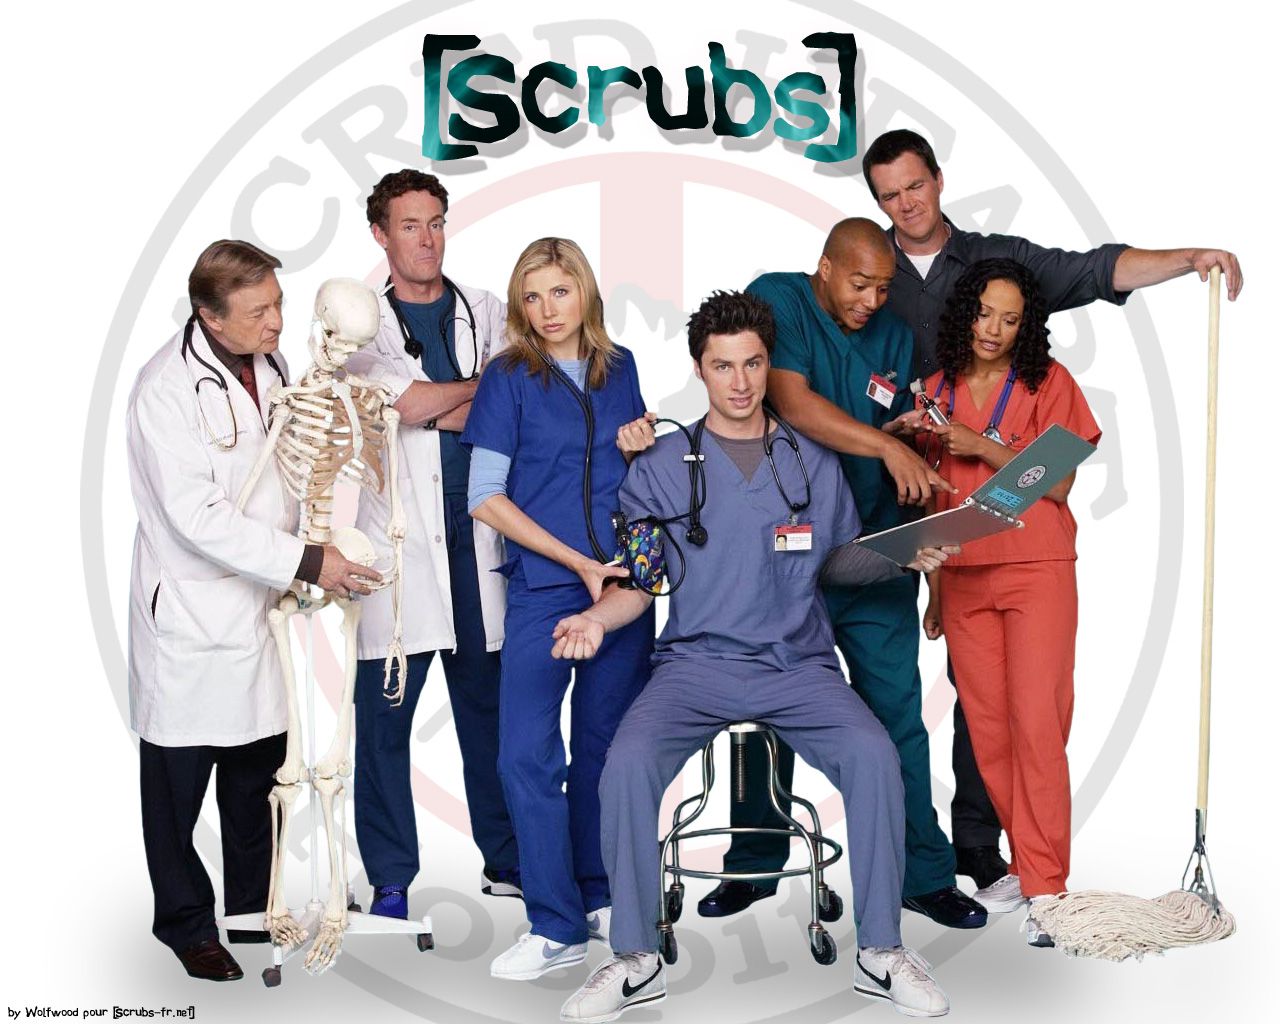 Scrubs - Scrubs Wallpaper 556592 - Fanpop